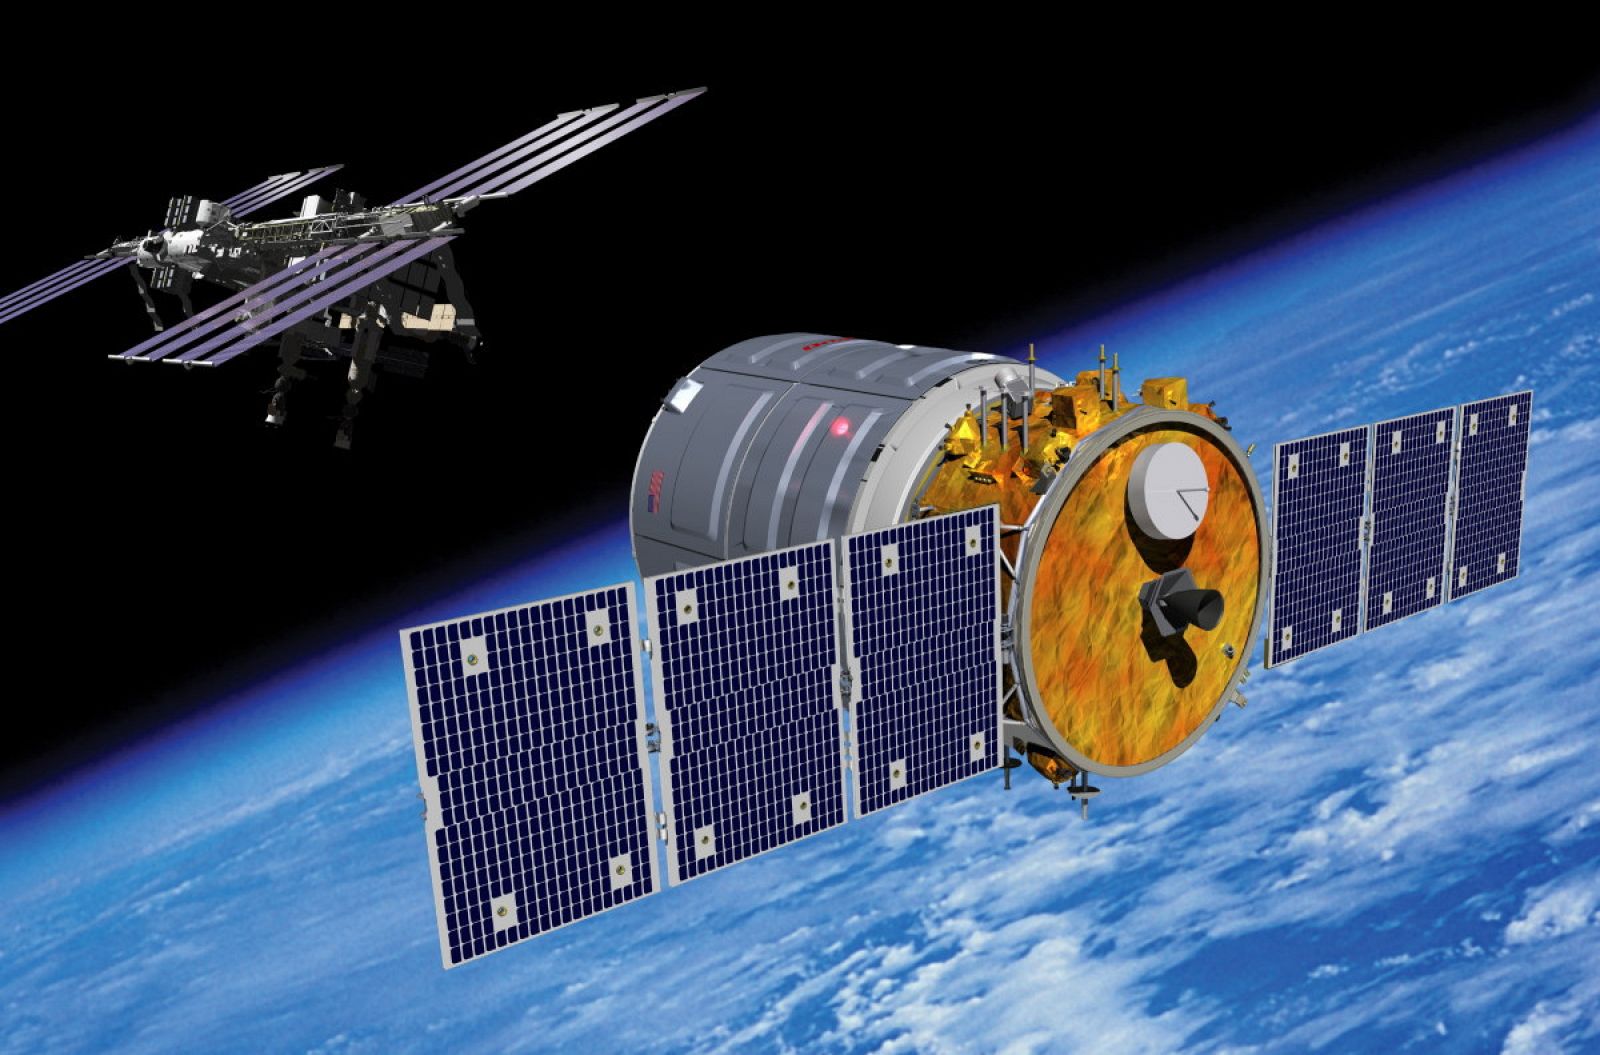 Impresión artística de la Cygnus aproximándose a la Estación Espacial Internacional